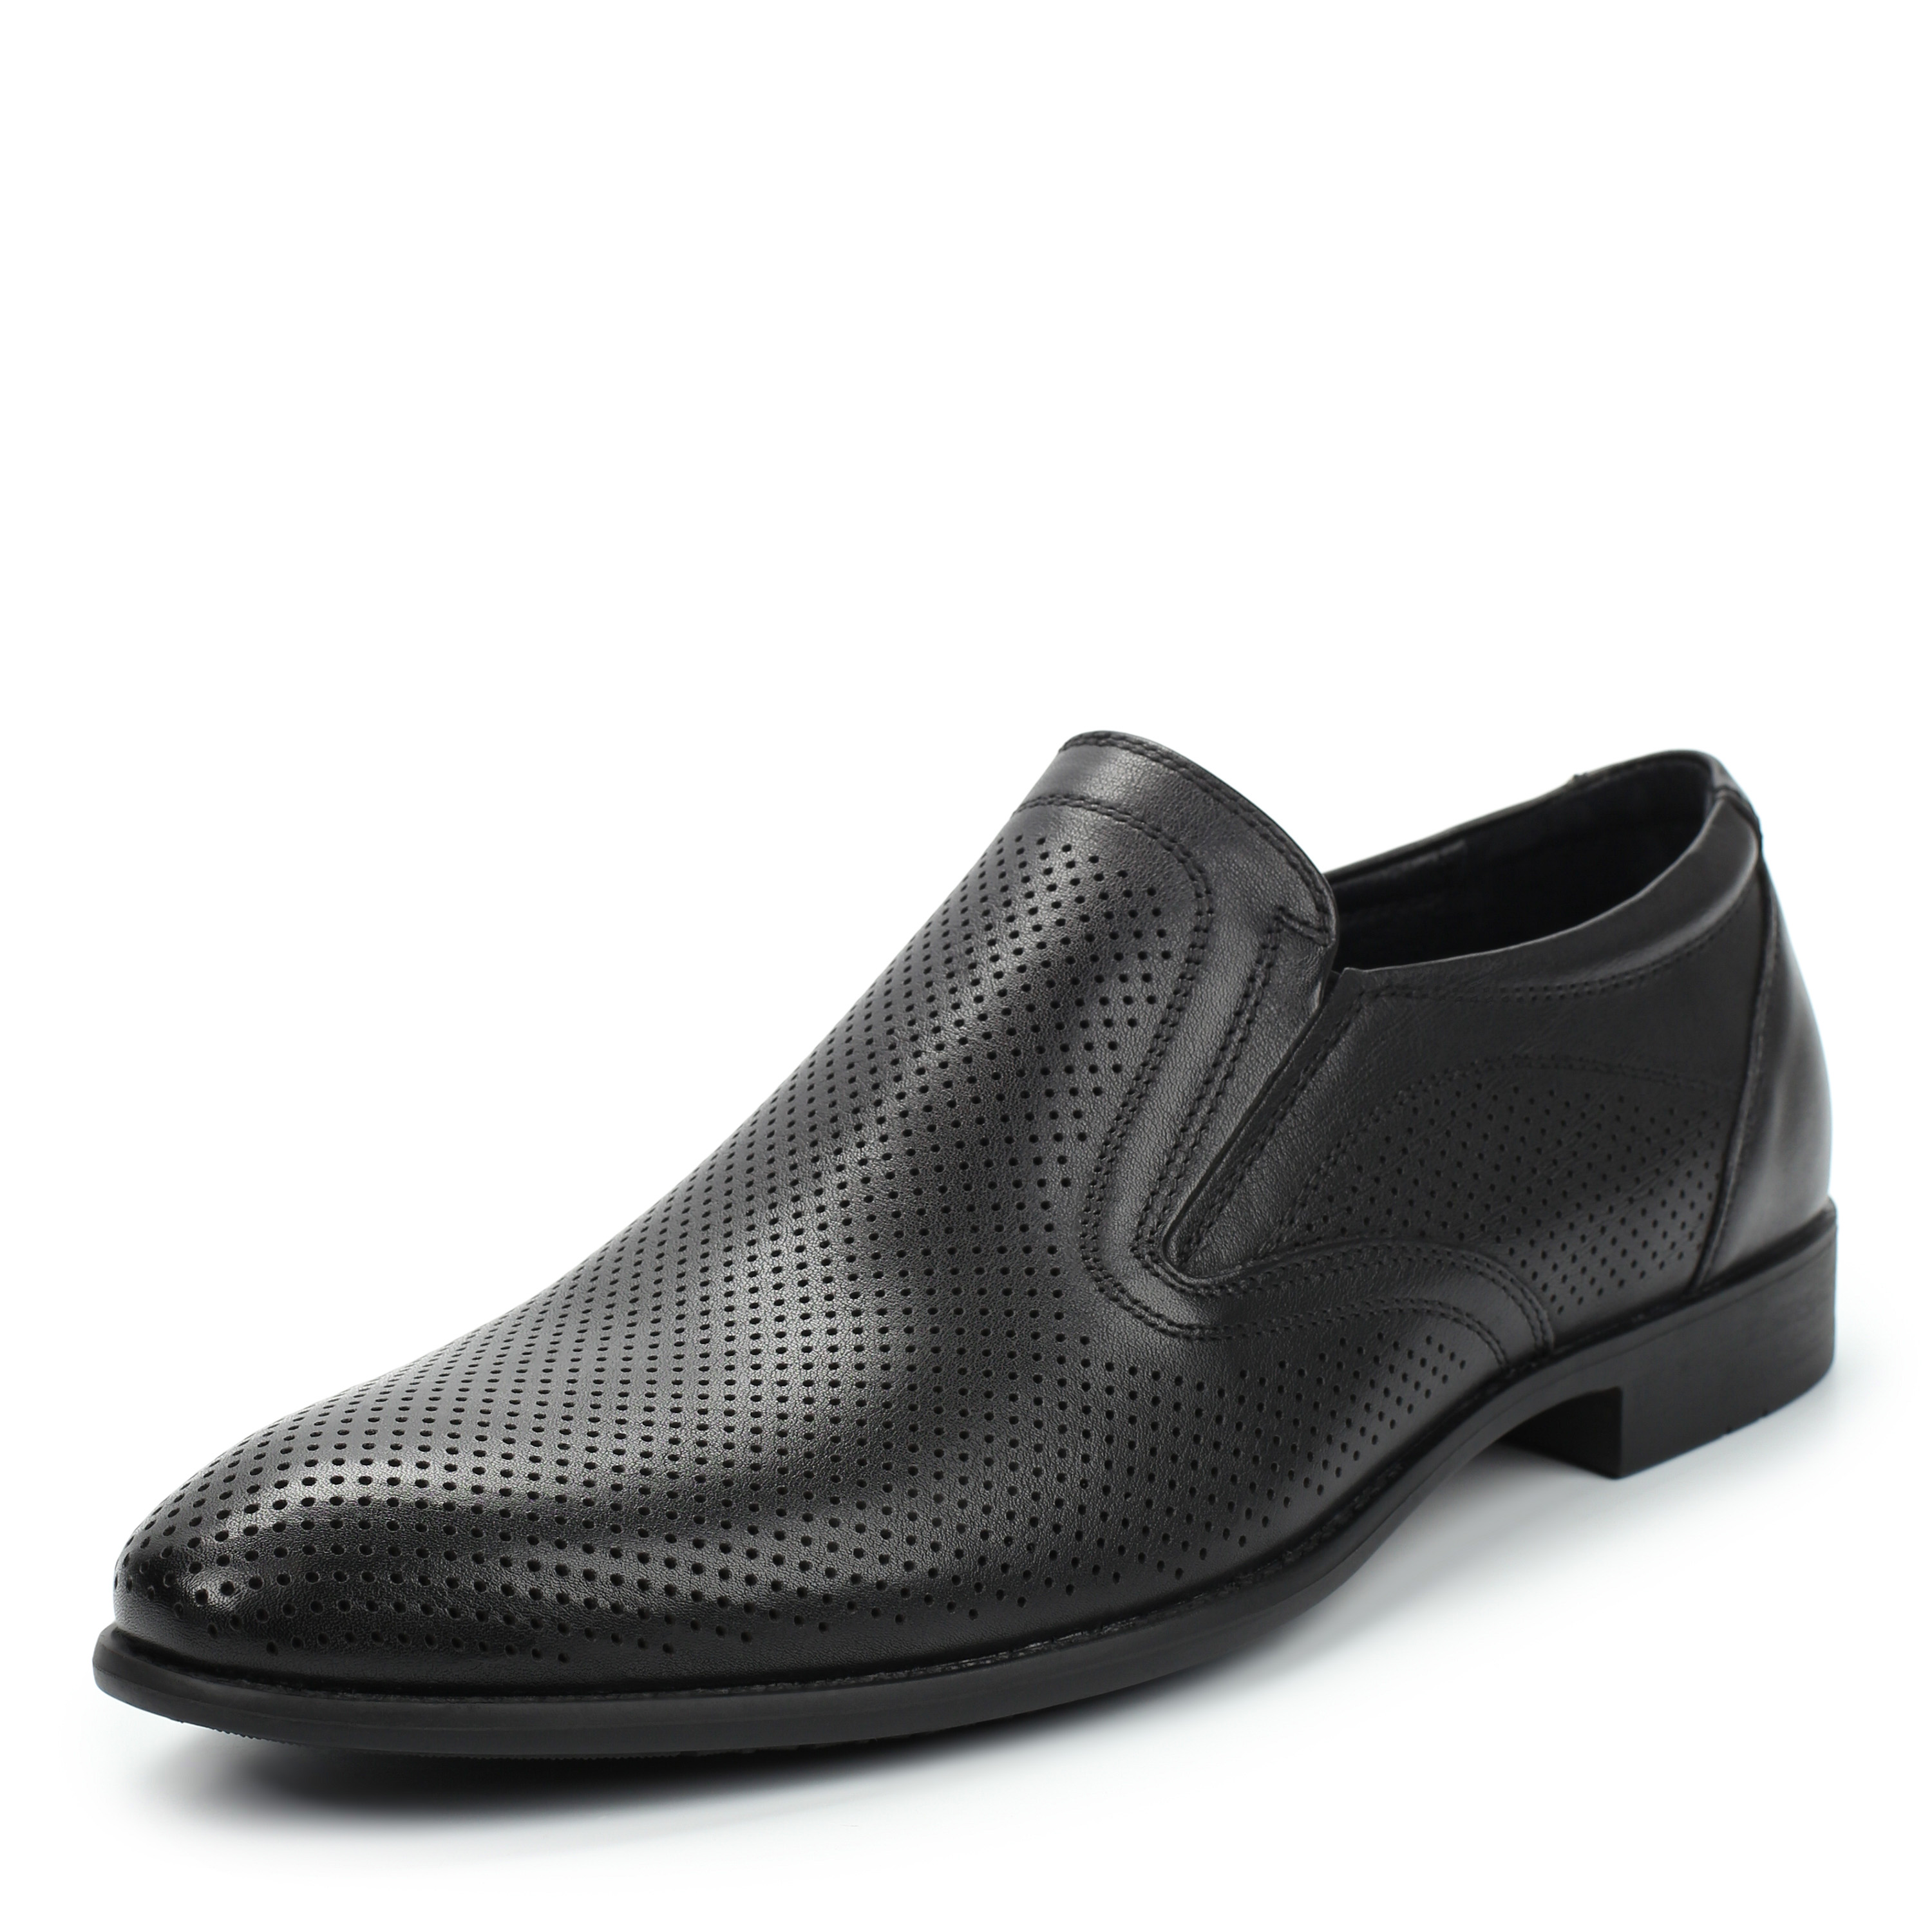 Полуботинки MUNZ Shoes 058-101B-1121 058-101B-1121, цвет черный, размер 40 туфли - фото 2